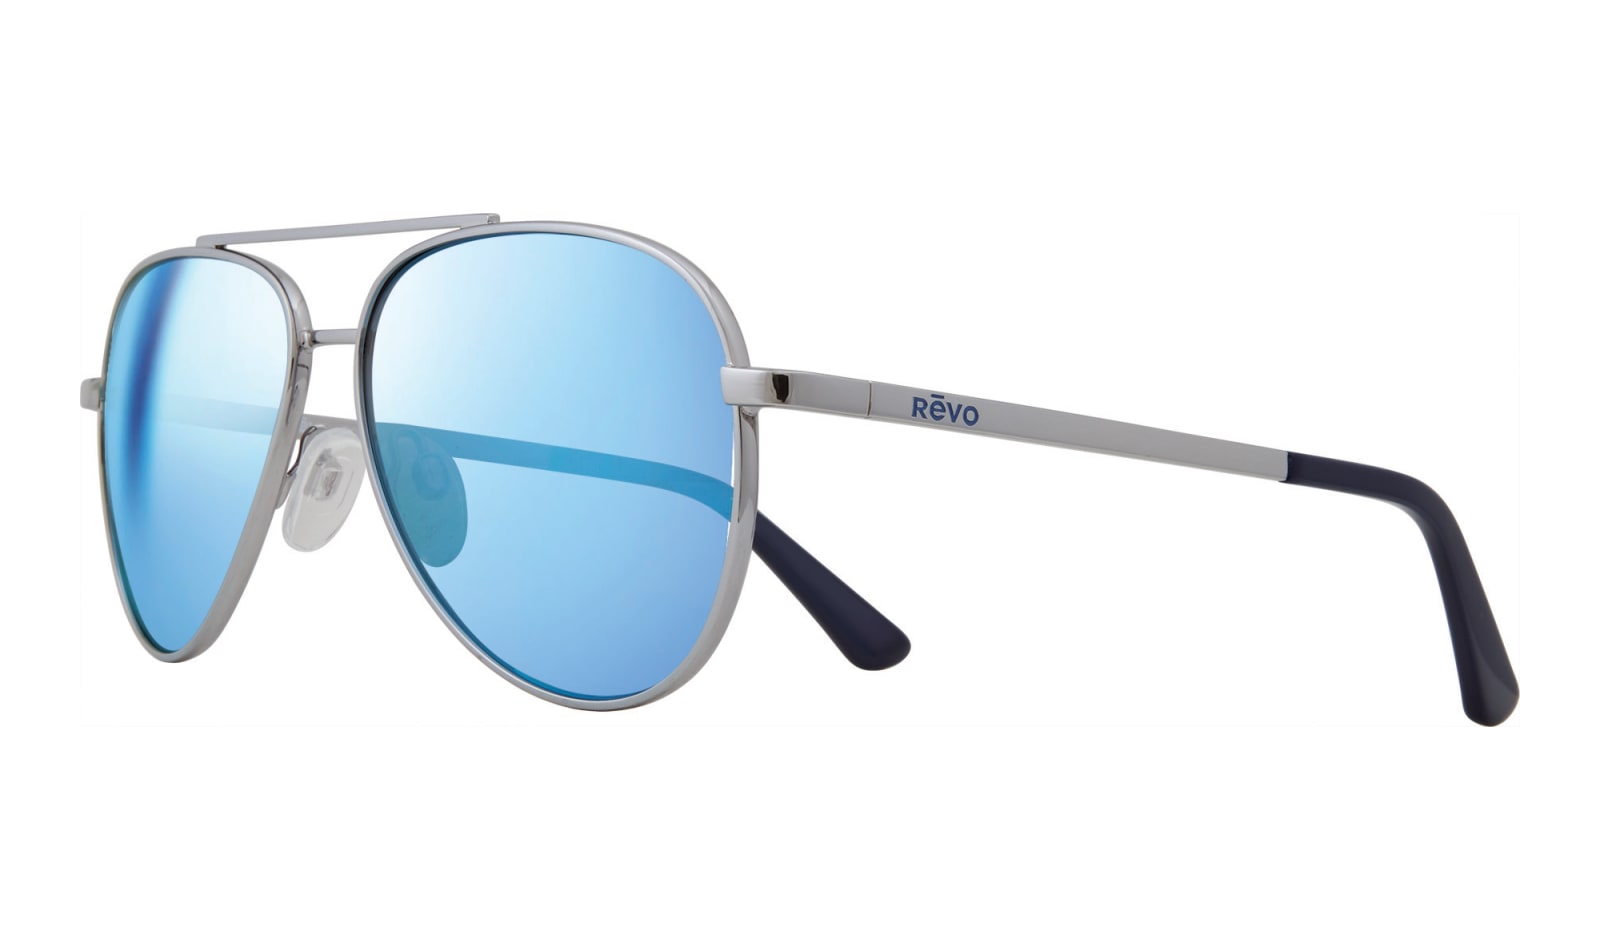 Revo Sunglasses & Prescription Eyewear Safety Gear